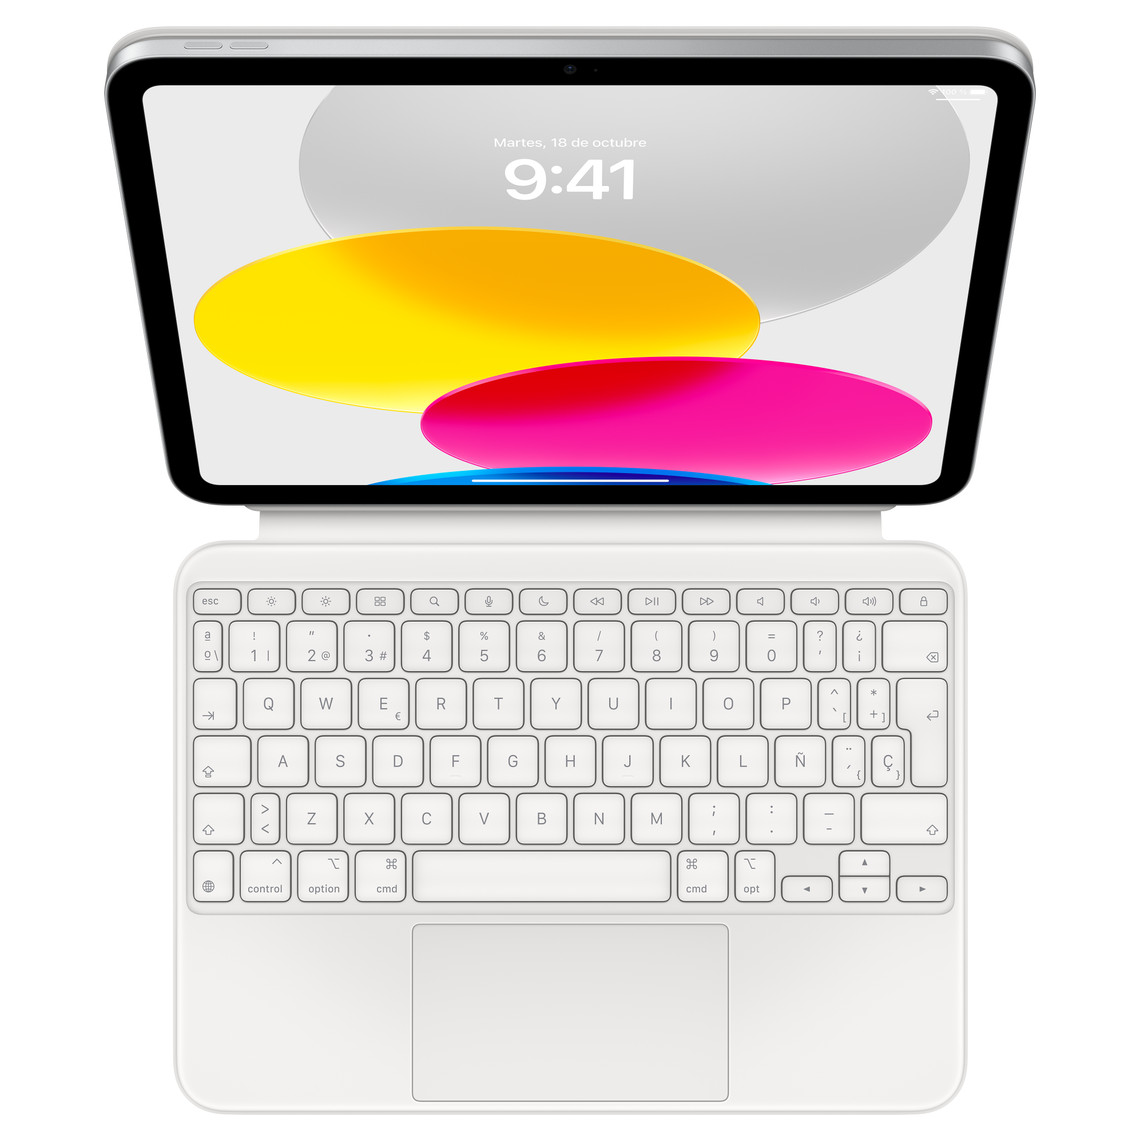 Vista desde arriba de un iPad conectado a un Magic Keyboard Folio apoyado sobre una superficie plana. En la pantalla se muestran diseños circulares de colores.